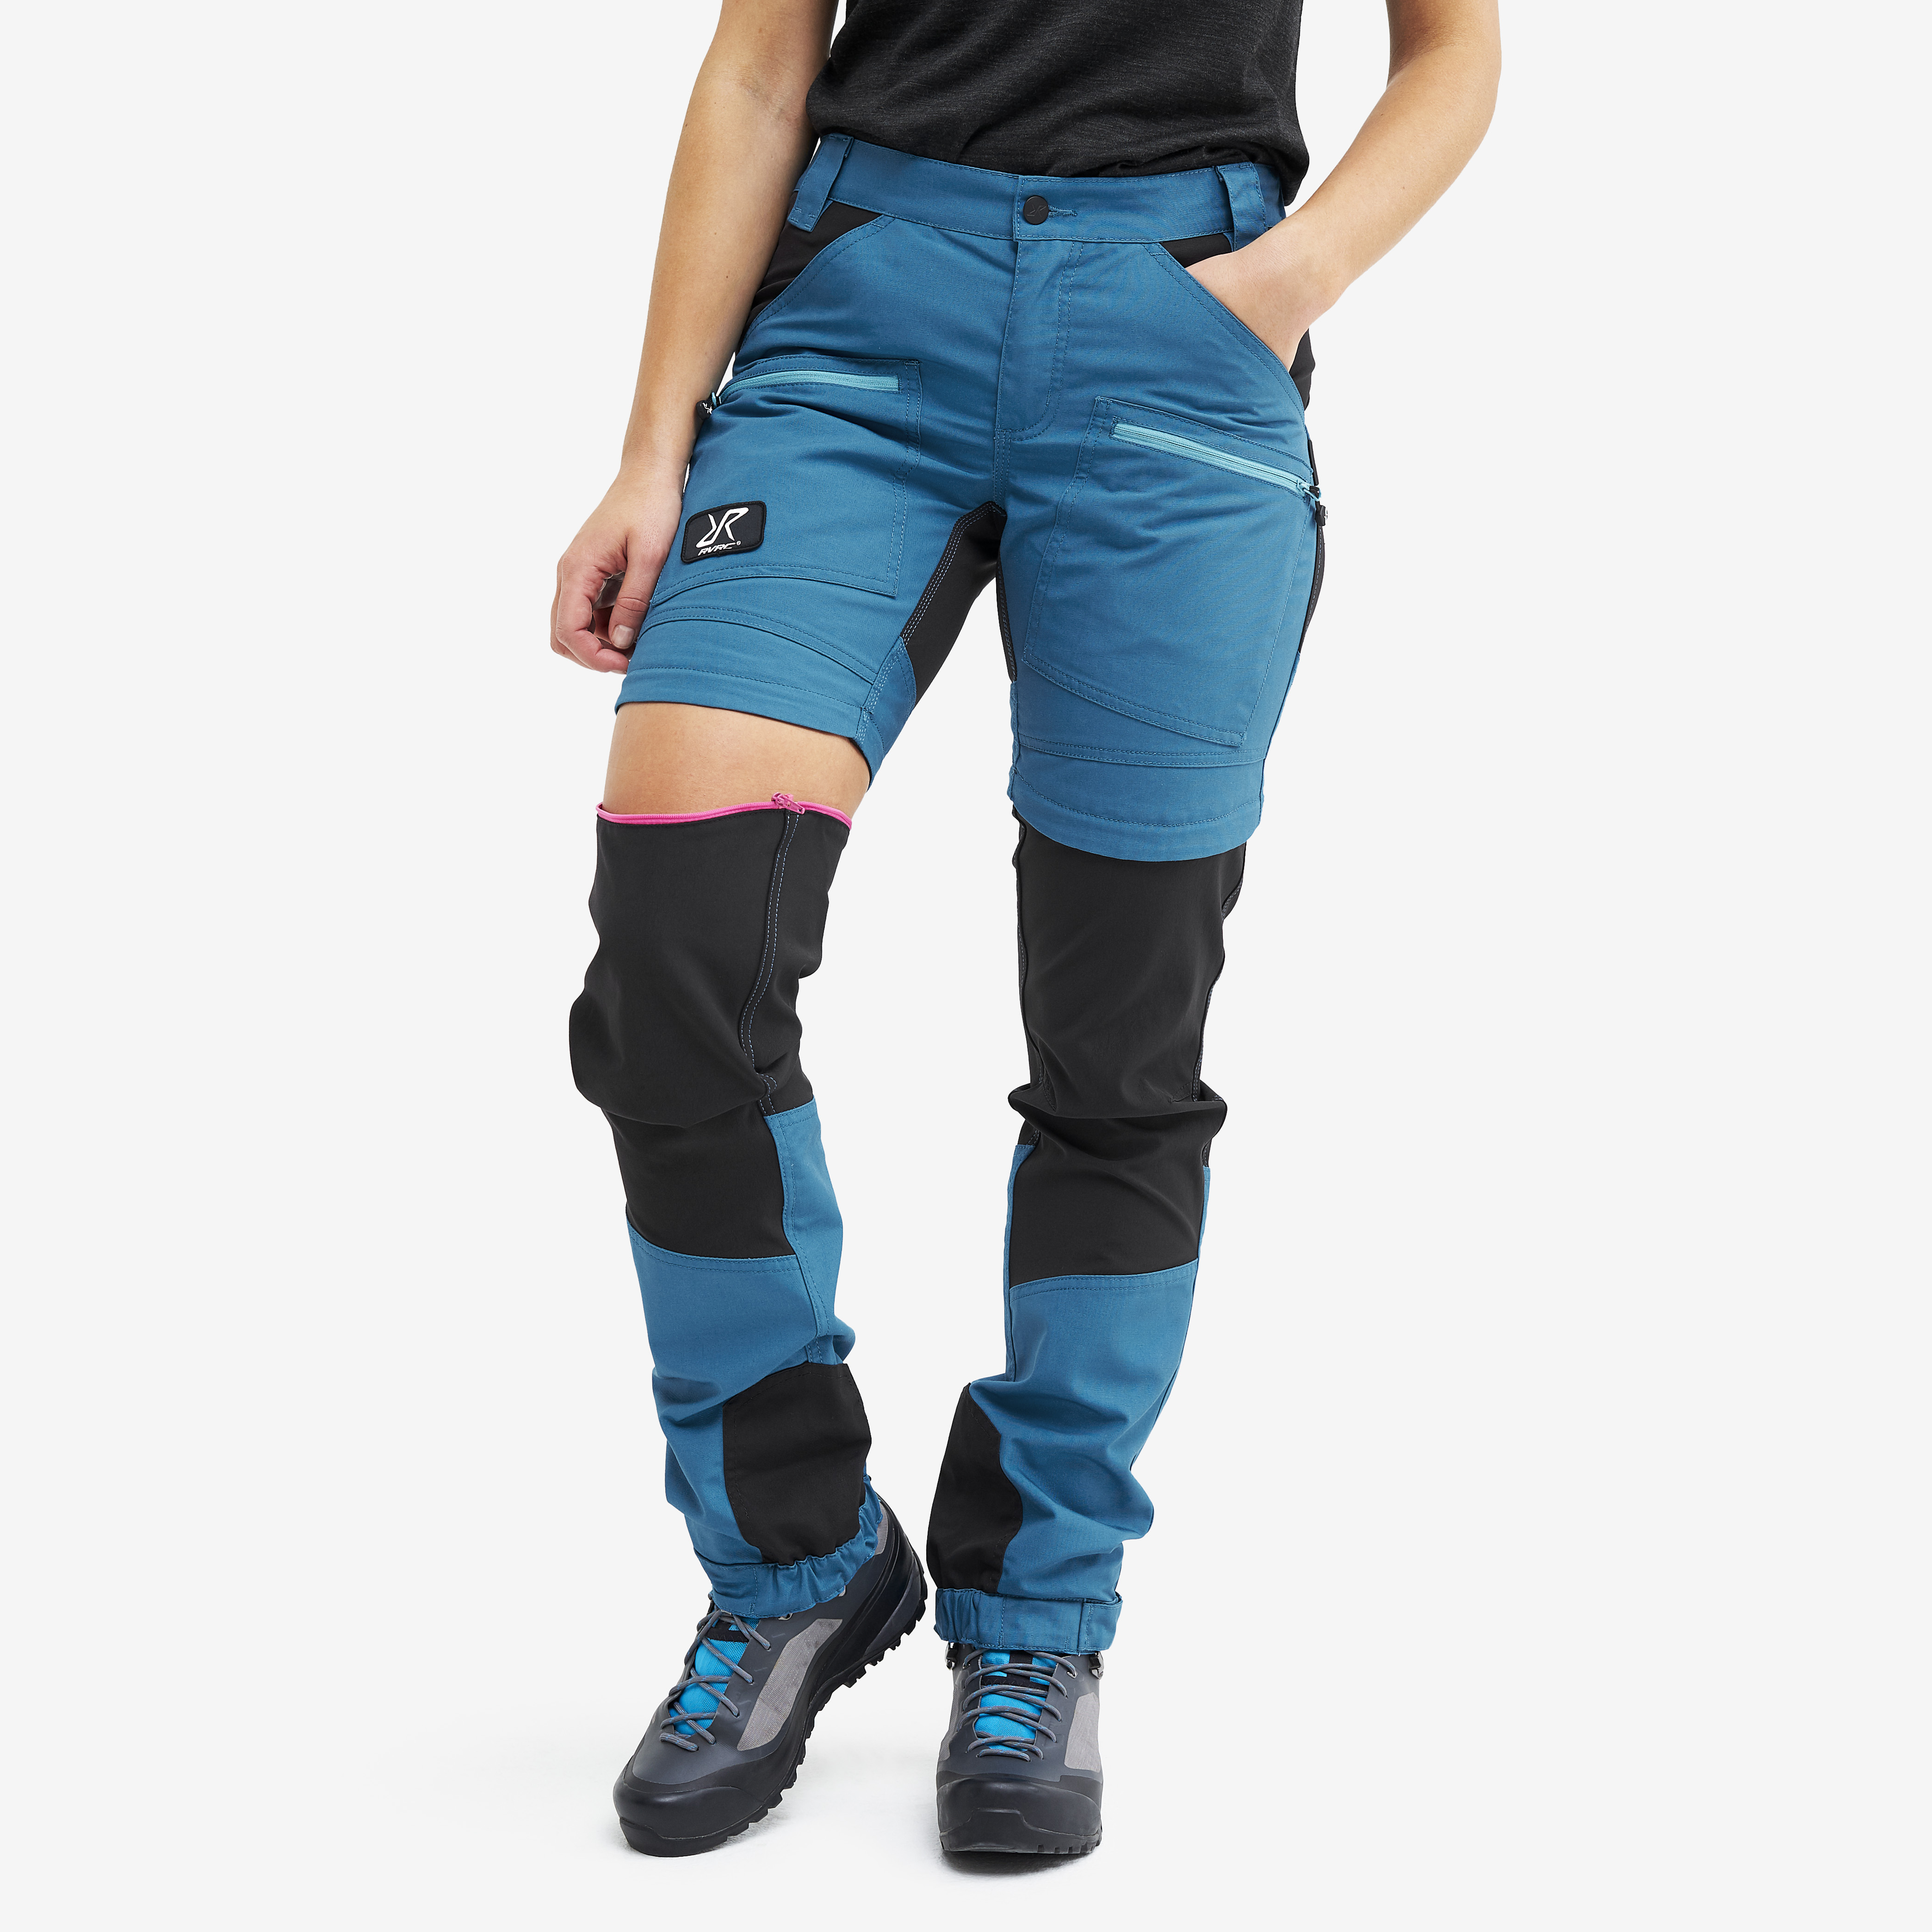 Nordwand Pro Zip-off vandrebukser for kvinder i blå